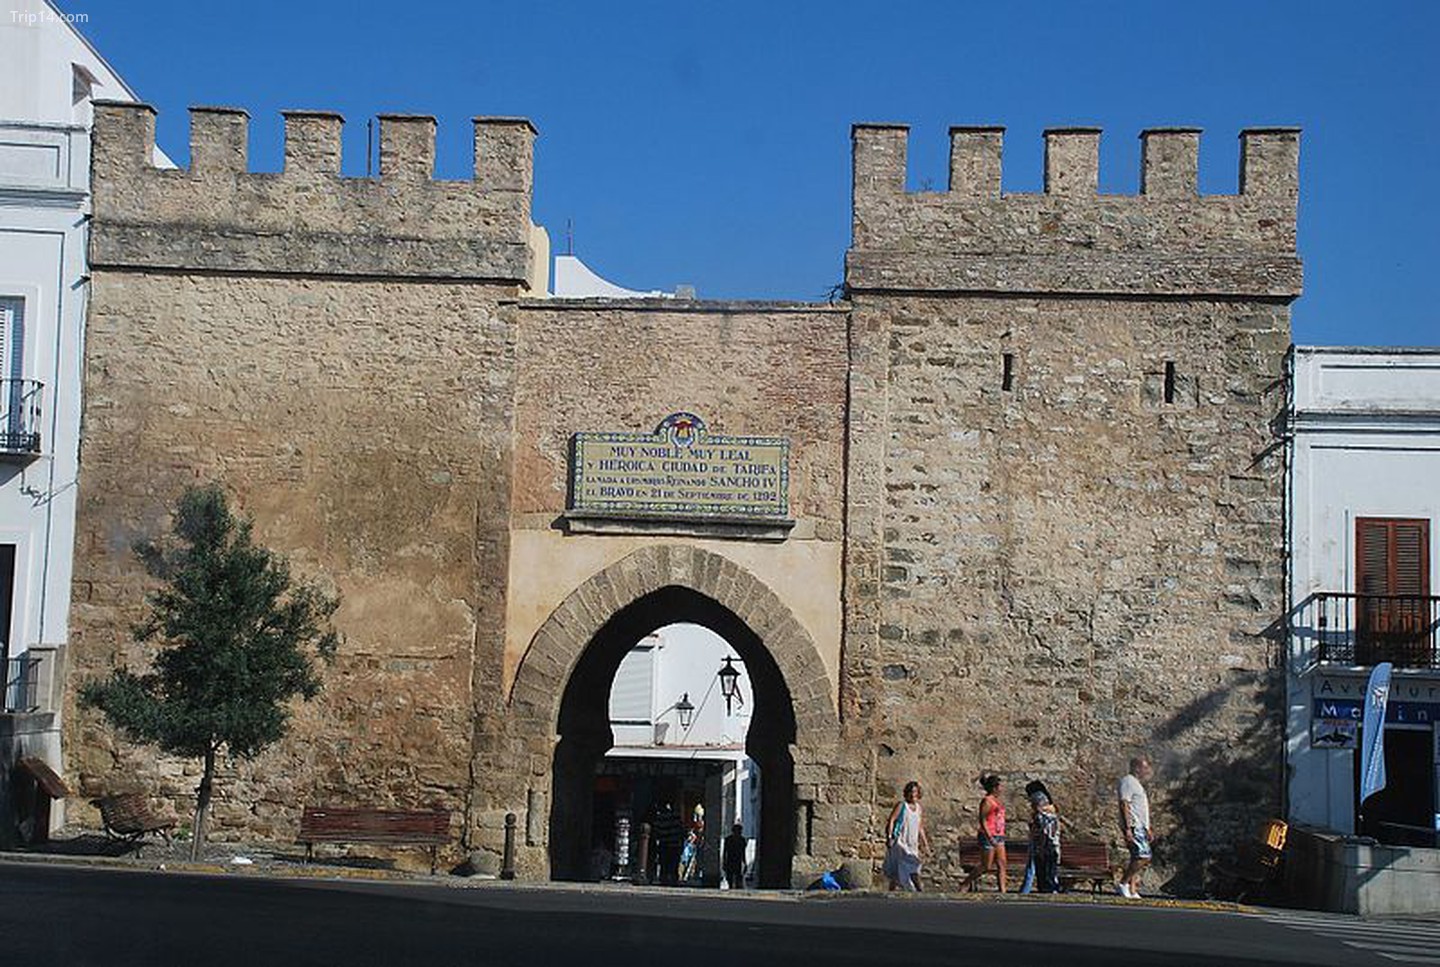  Puerta de Jerez, Tarifa   |   